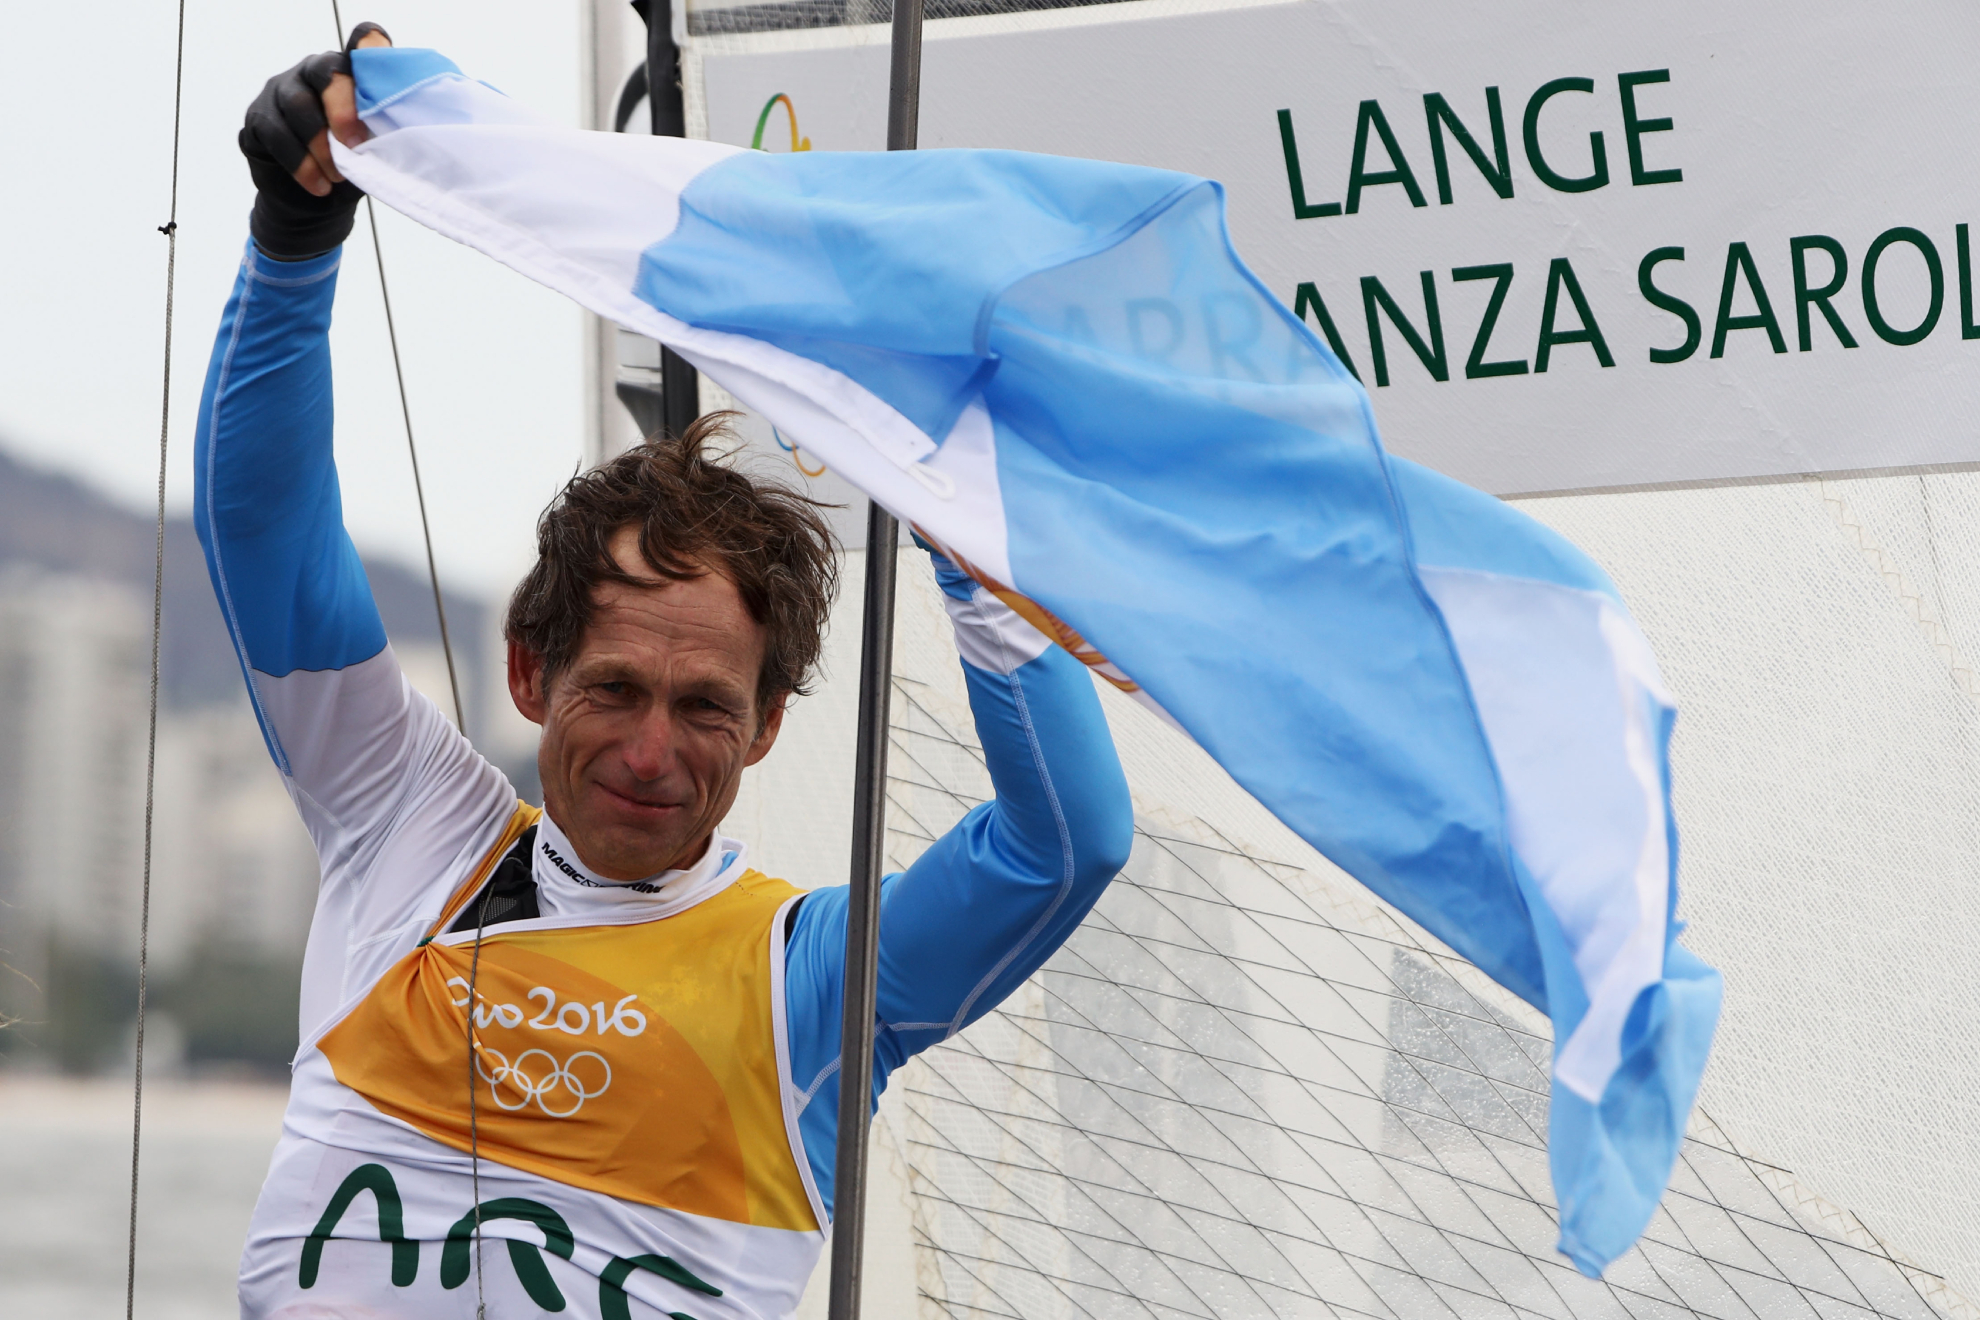 Santiago Lange, en los Juegos Olímpicos de Río 2016.